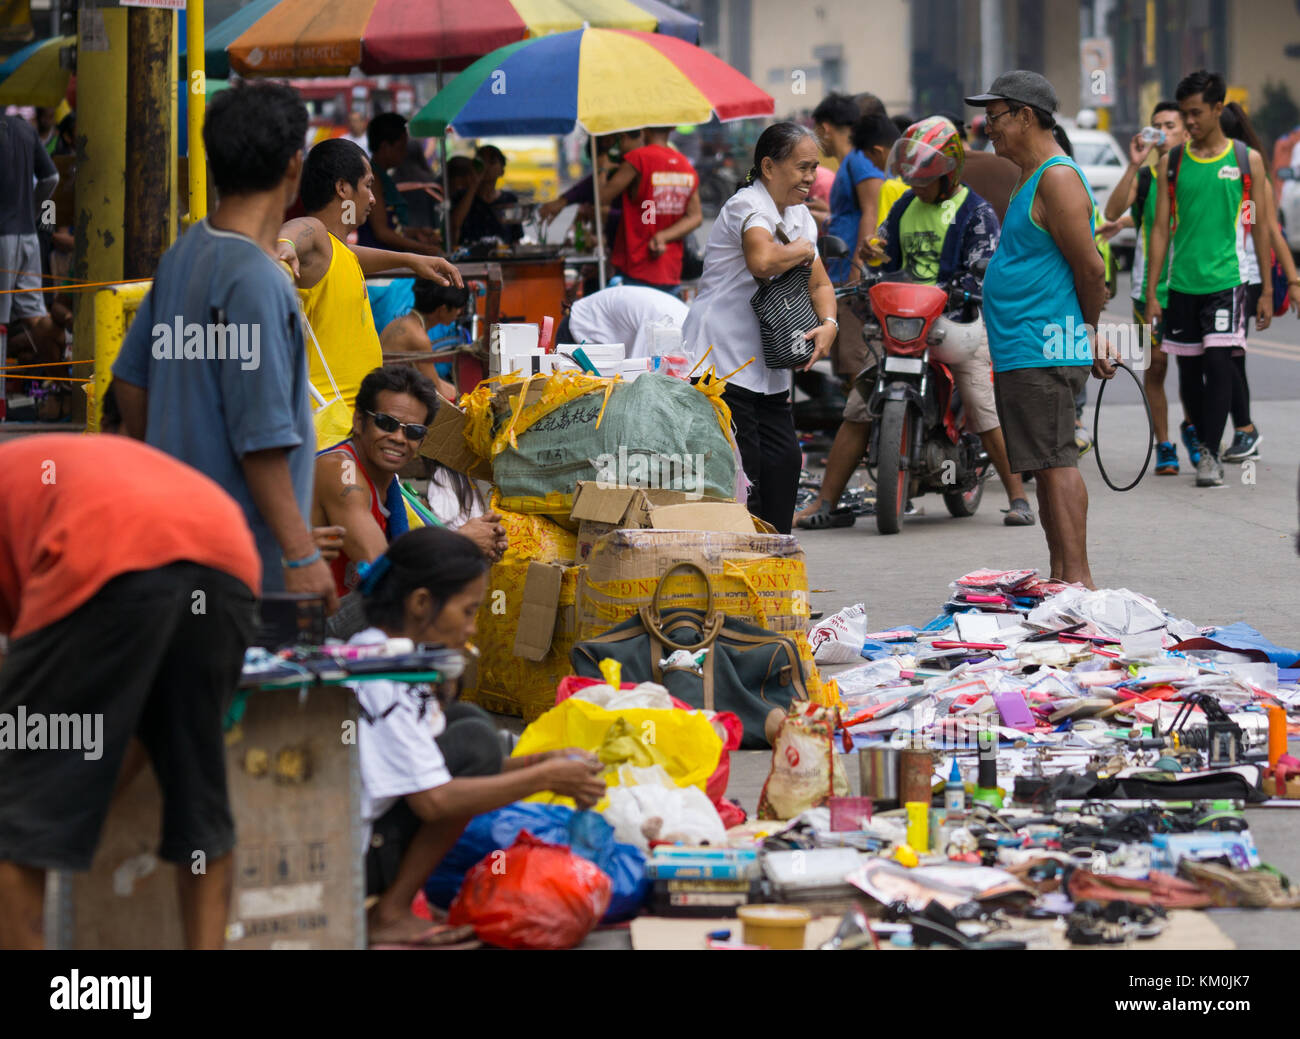 Una tipica scena nel centro di Cebu City, Filippine, in una domenica mattina dove commercianti ambulanti sono autorizzati a vendere gli articoli sulla strada. Foto Stock